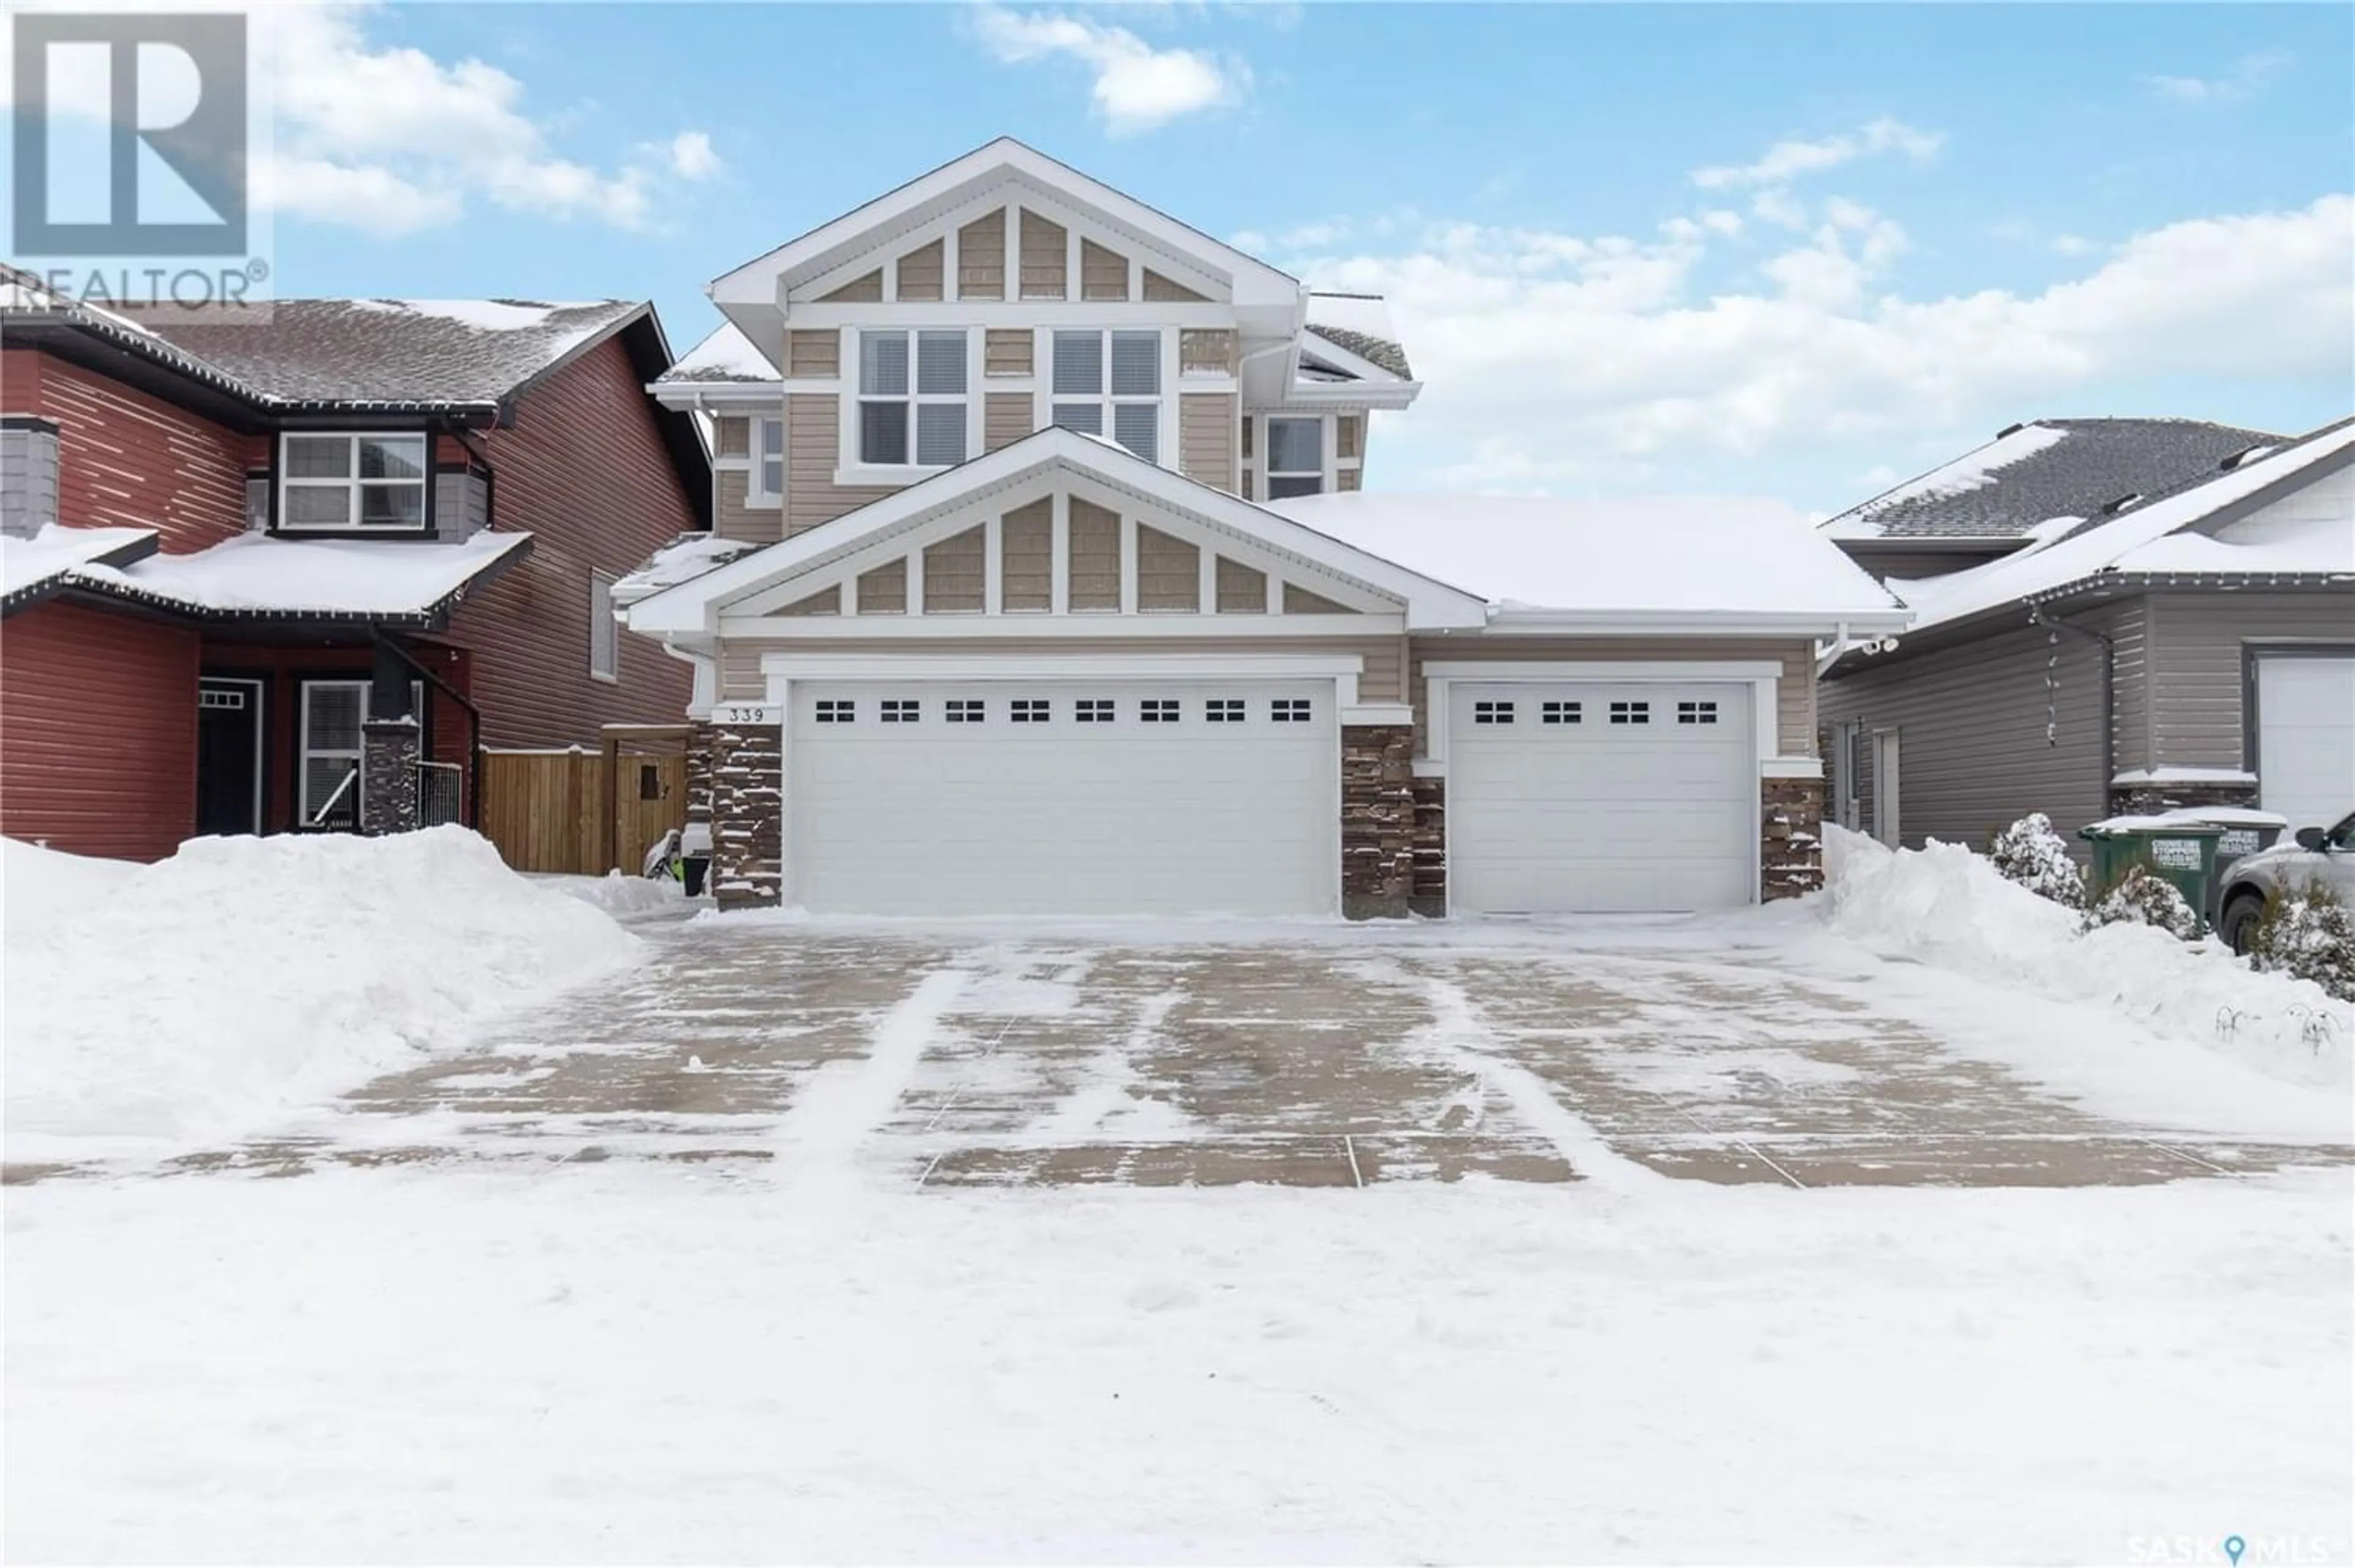 Home with stucco exterior material for 339 Pichler CRESCENT, Saskatoon Saskatchewan S7V0G3